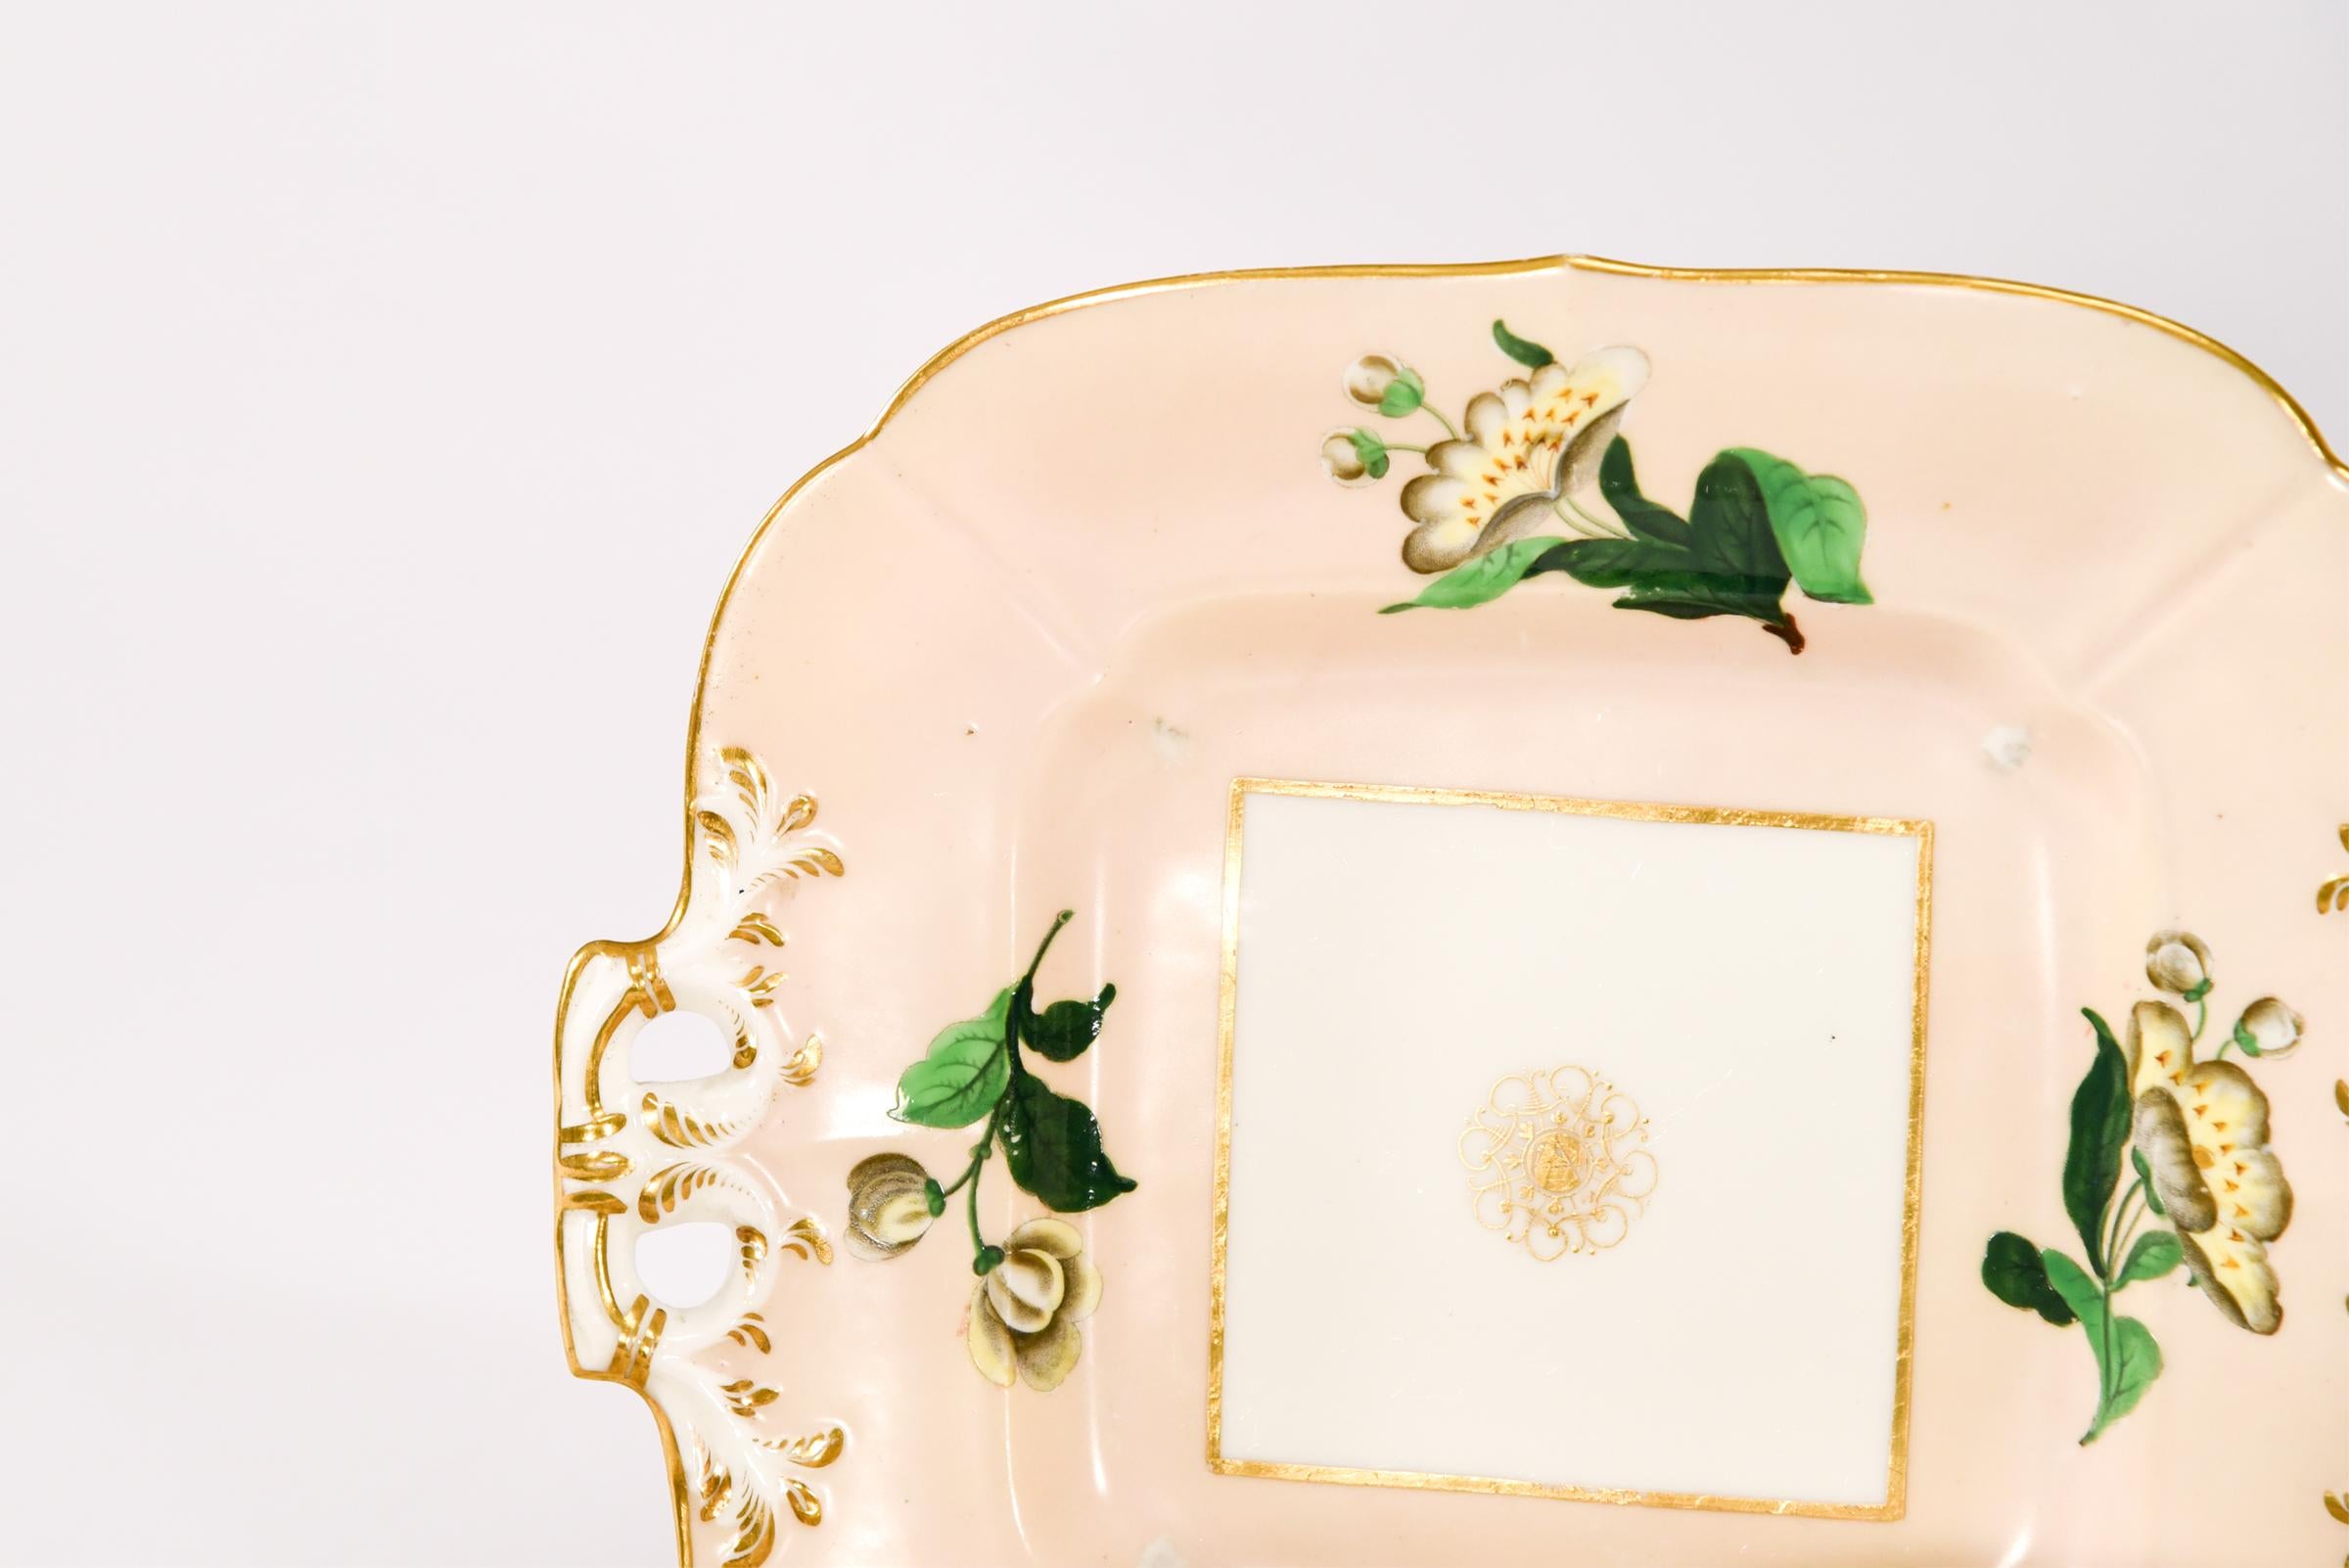 Dieses klassische Dessert-, Tee- und Kaffeeservice von Spode aus dem 19. Jahrhundert spiegelt die Schönheit der damaligen Zeit und die elegante Blumendekoration wider. Der komplette Service für 8 Personen plus Extras ist erstaunlich, vor allem für